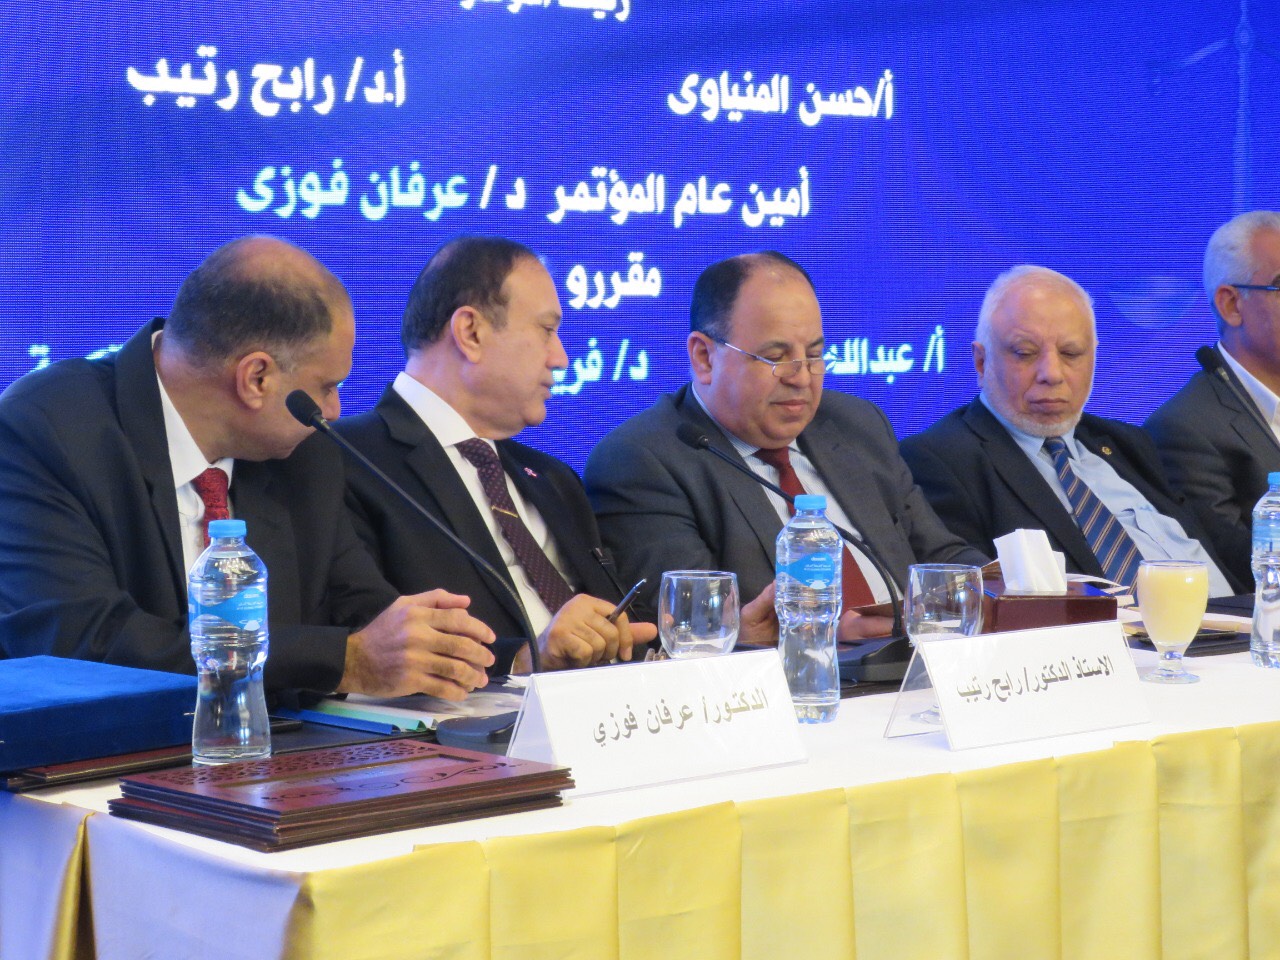   وزير المالية في مؤتمر جمعية «التشريع الضريبي»: مصر تفتح ذراعيها لشركاء التنمية في العالم من أجل غد أفضل